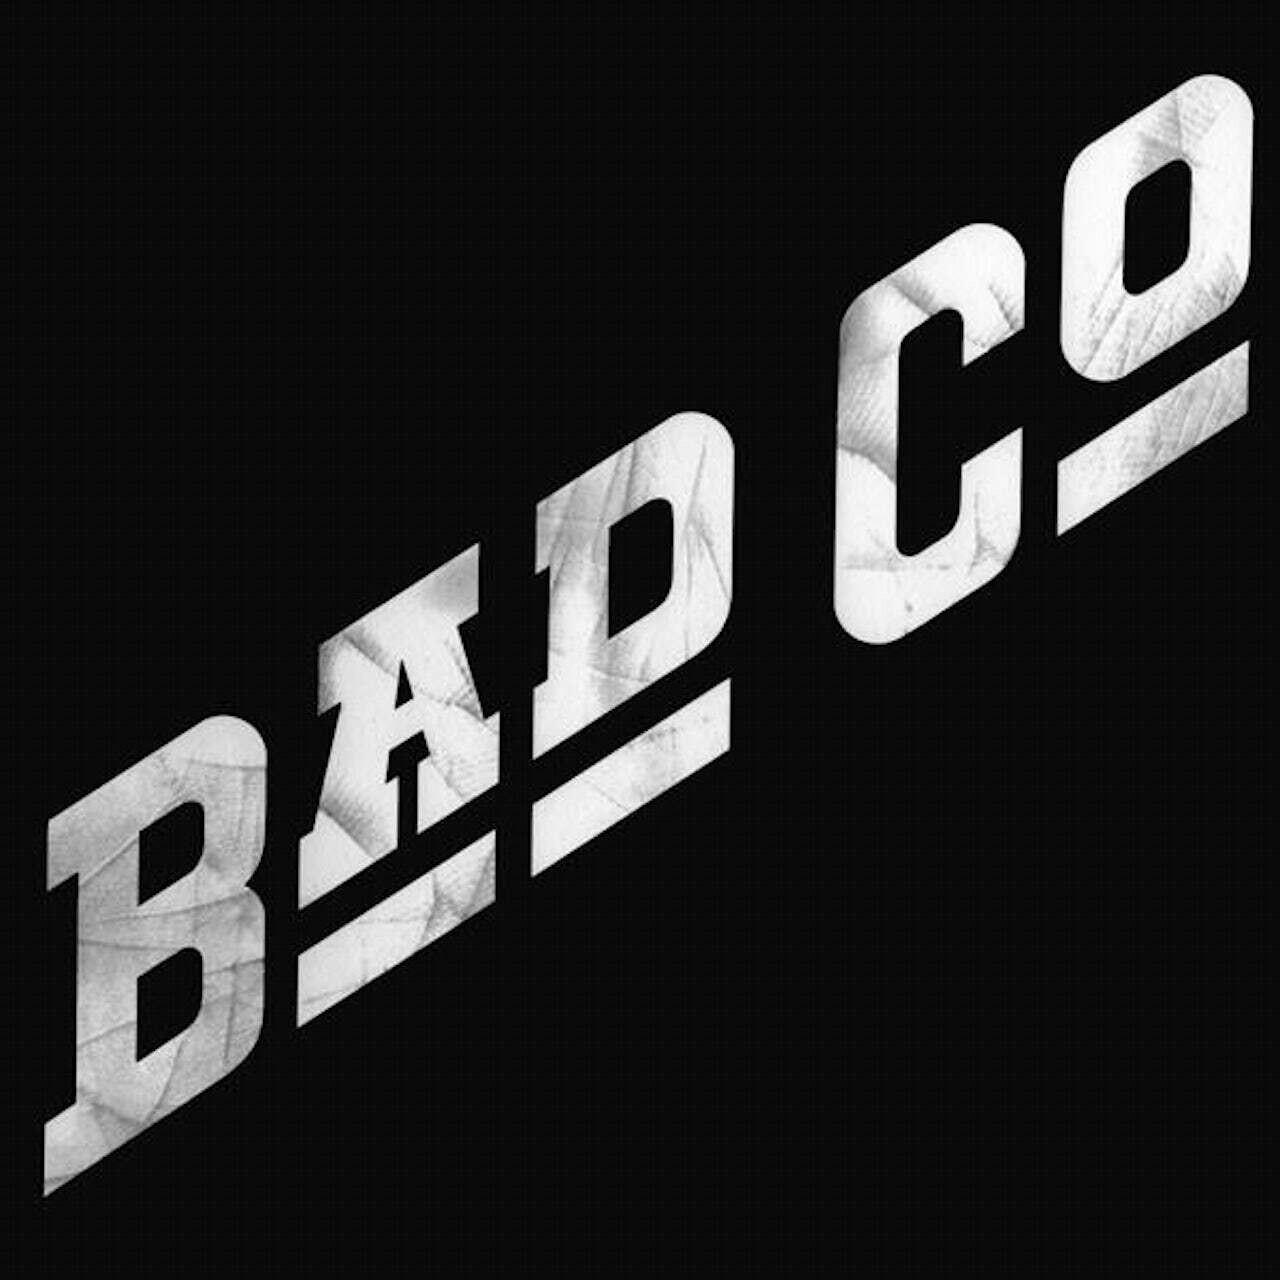 Bad Company / Bad Company (ROCKTOBER)